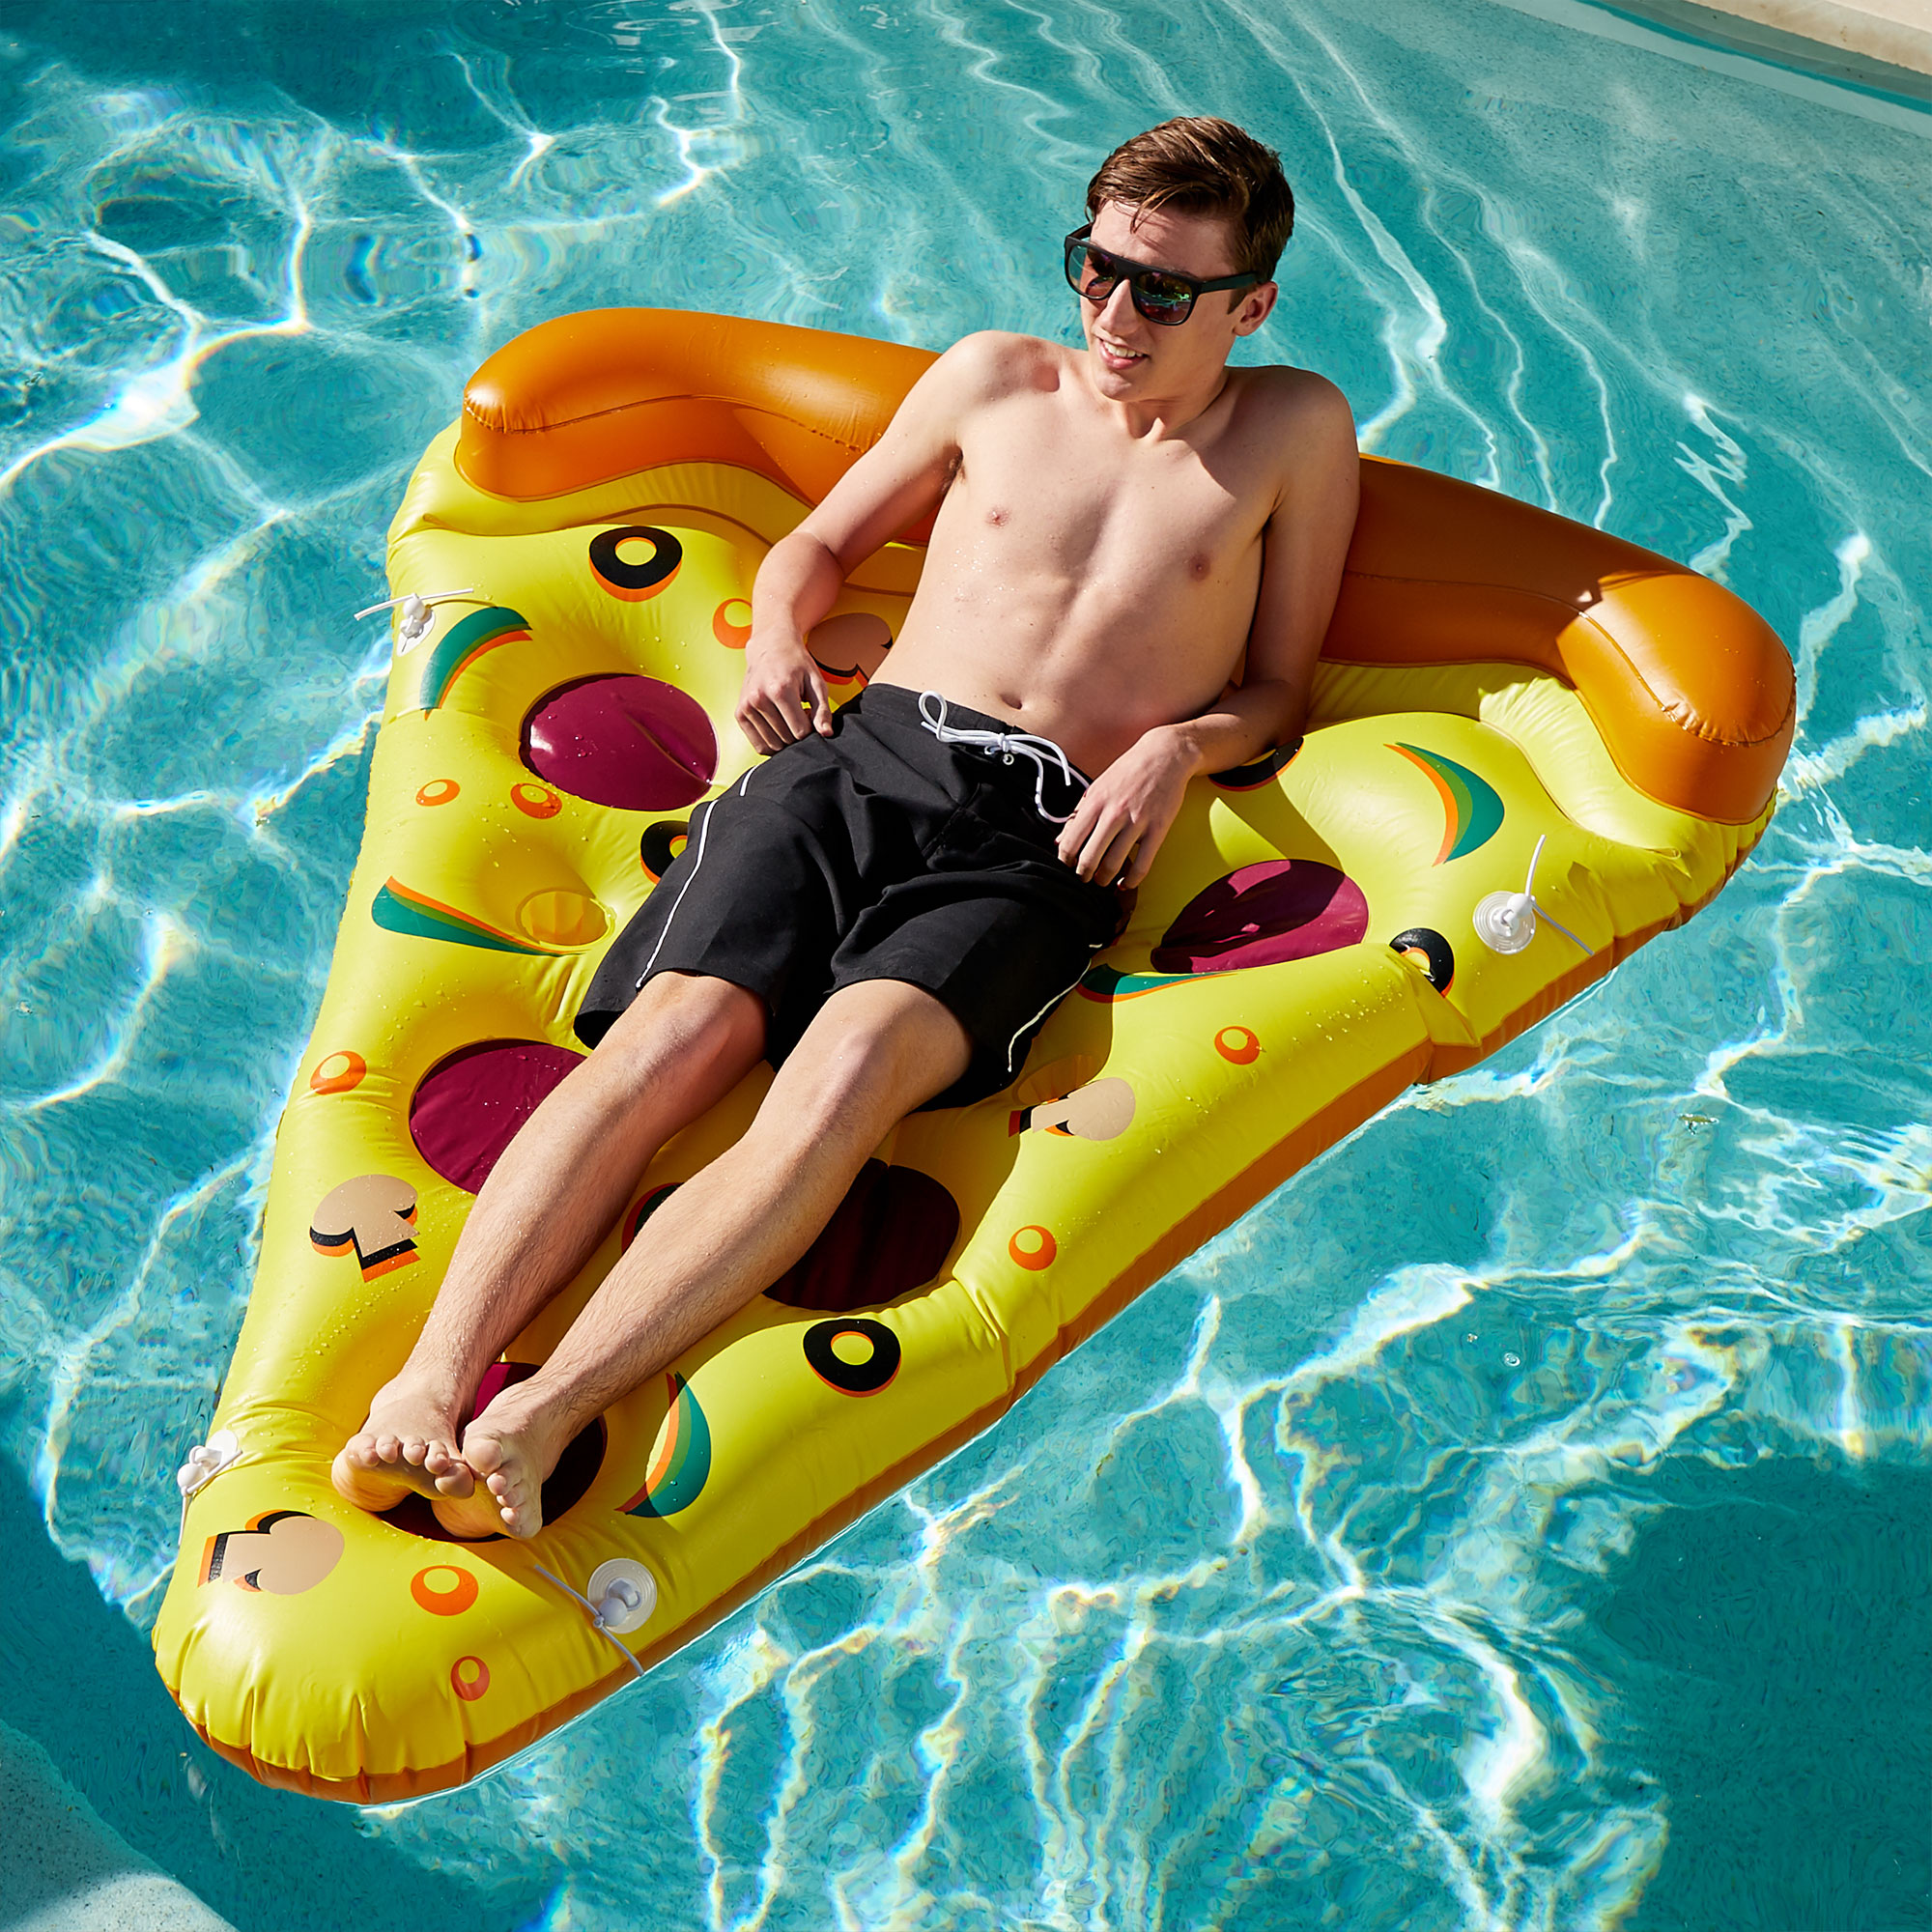 フロート プール 水遊び 浮き輪 72" Inflatable Yellow and Orange Pizza Slice Swimming Pool Float Raftフロート プール 水遊び 浮き輪